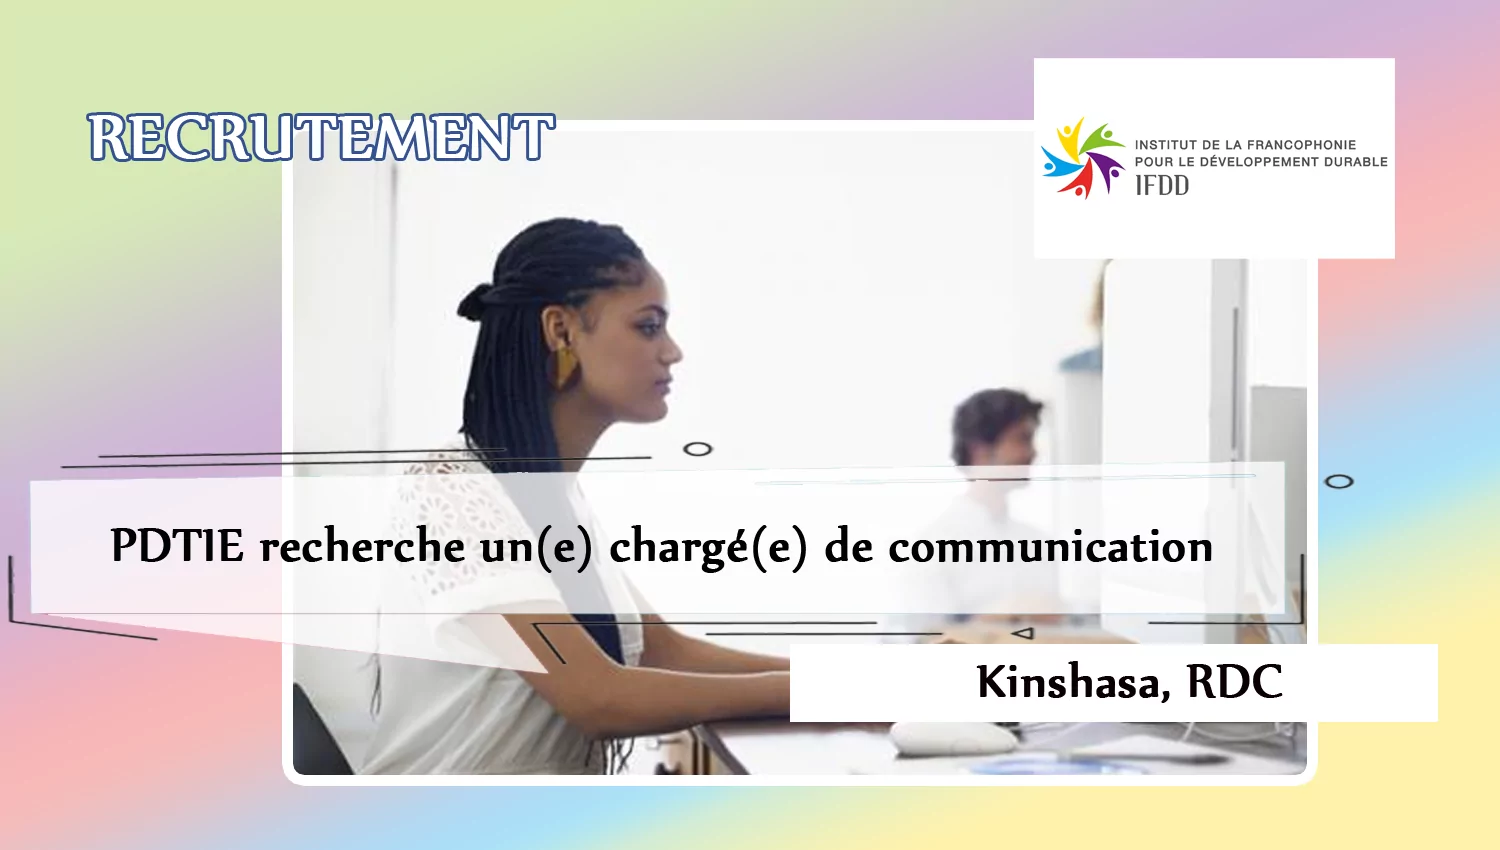 PDTIE recherche un(e) chargé(e) de communication, Kinshasa, RDC